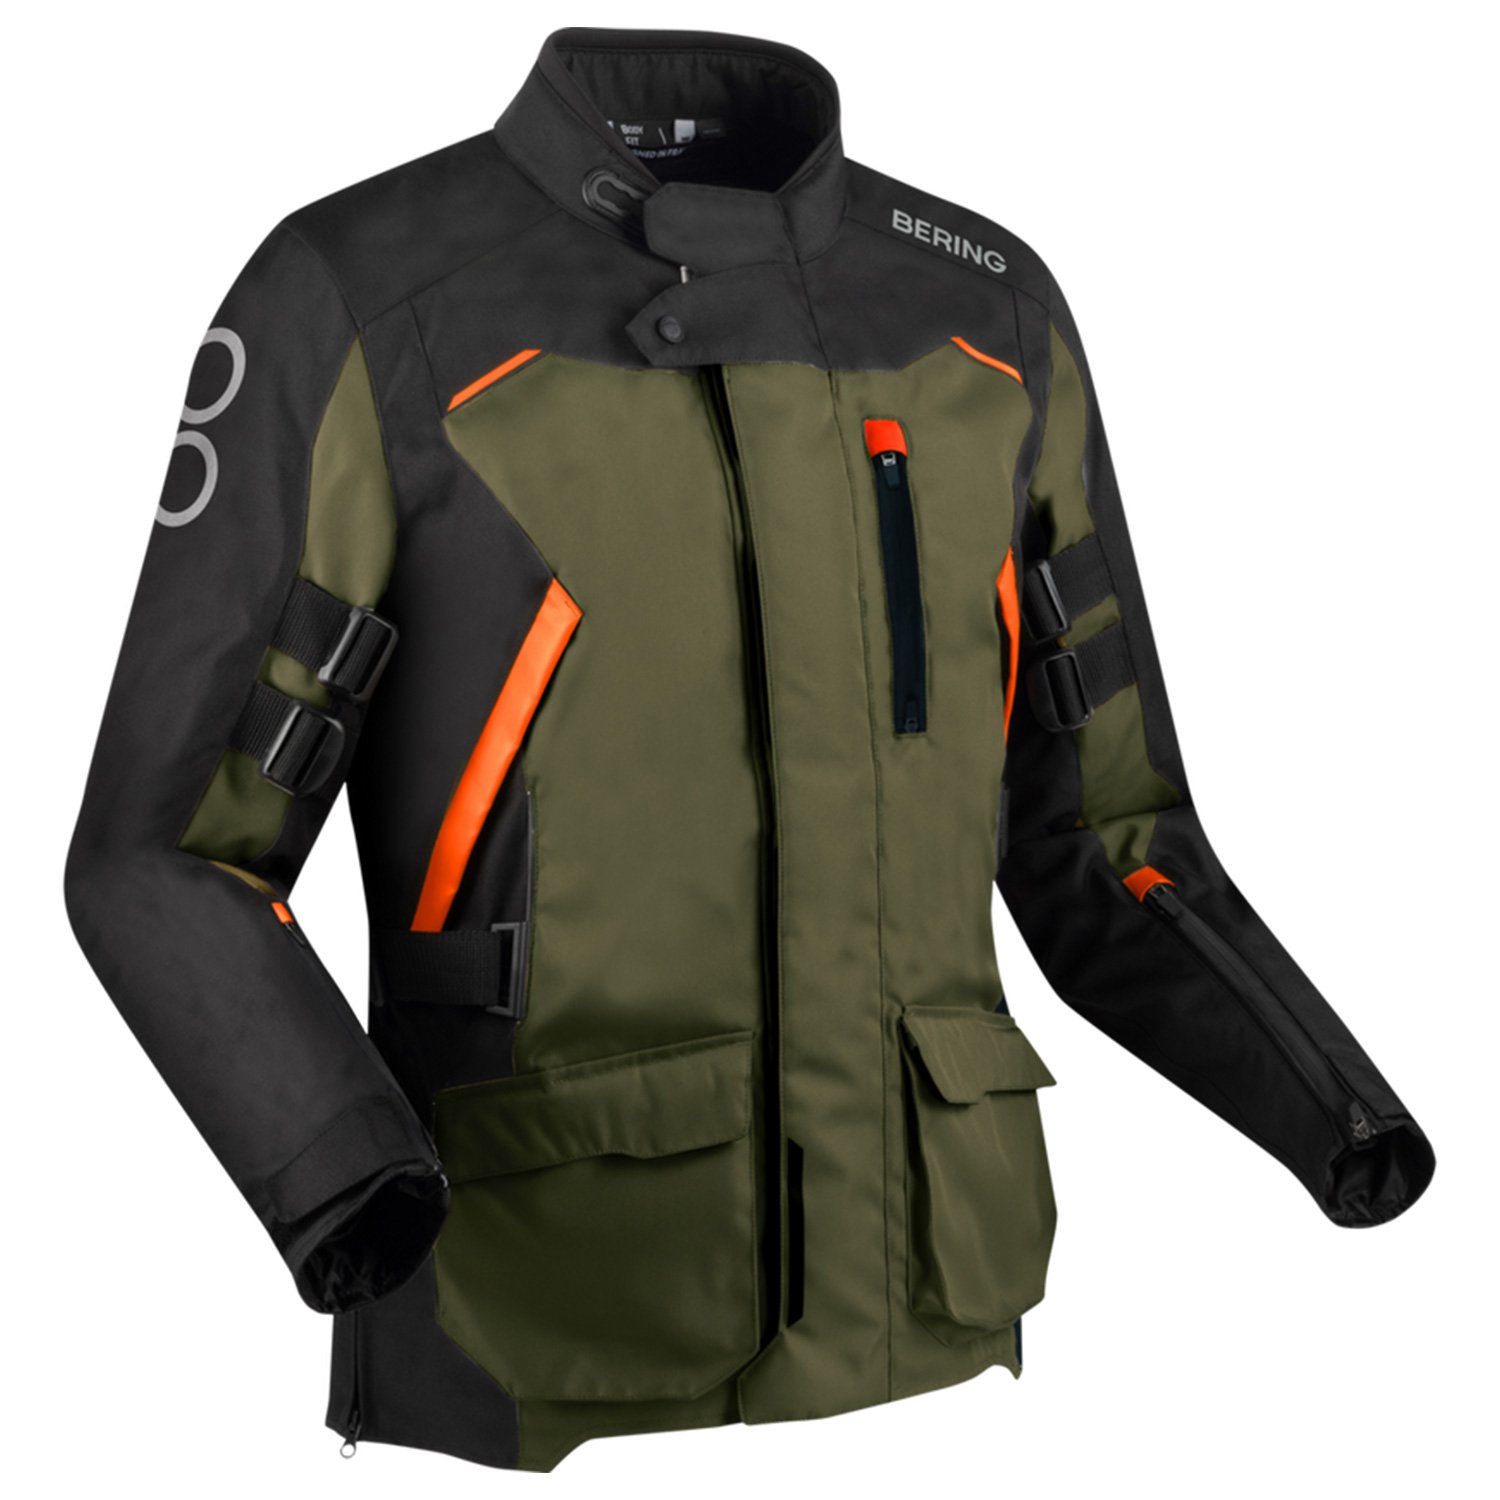 Image of Bering Zephyr Jacket Black Khaki Orange Size XL ID 3660815181034